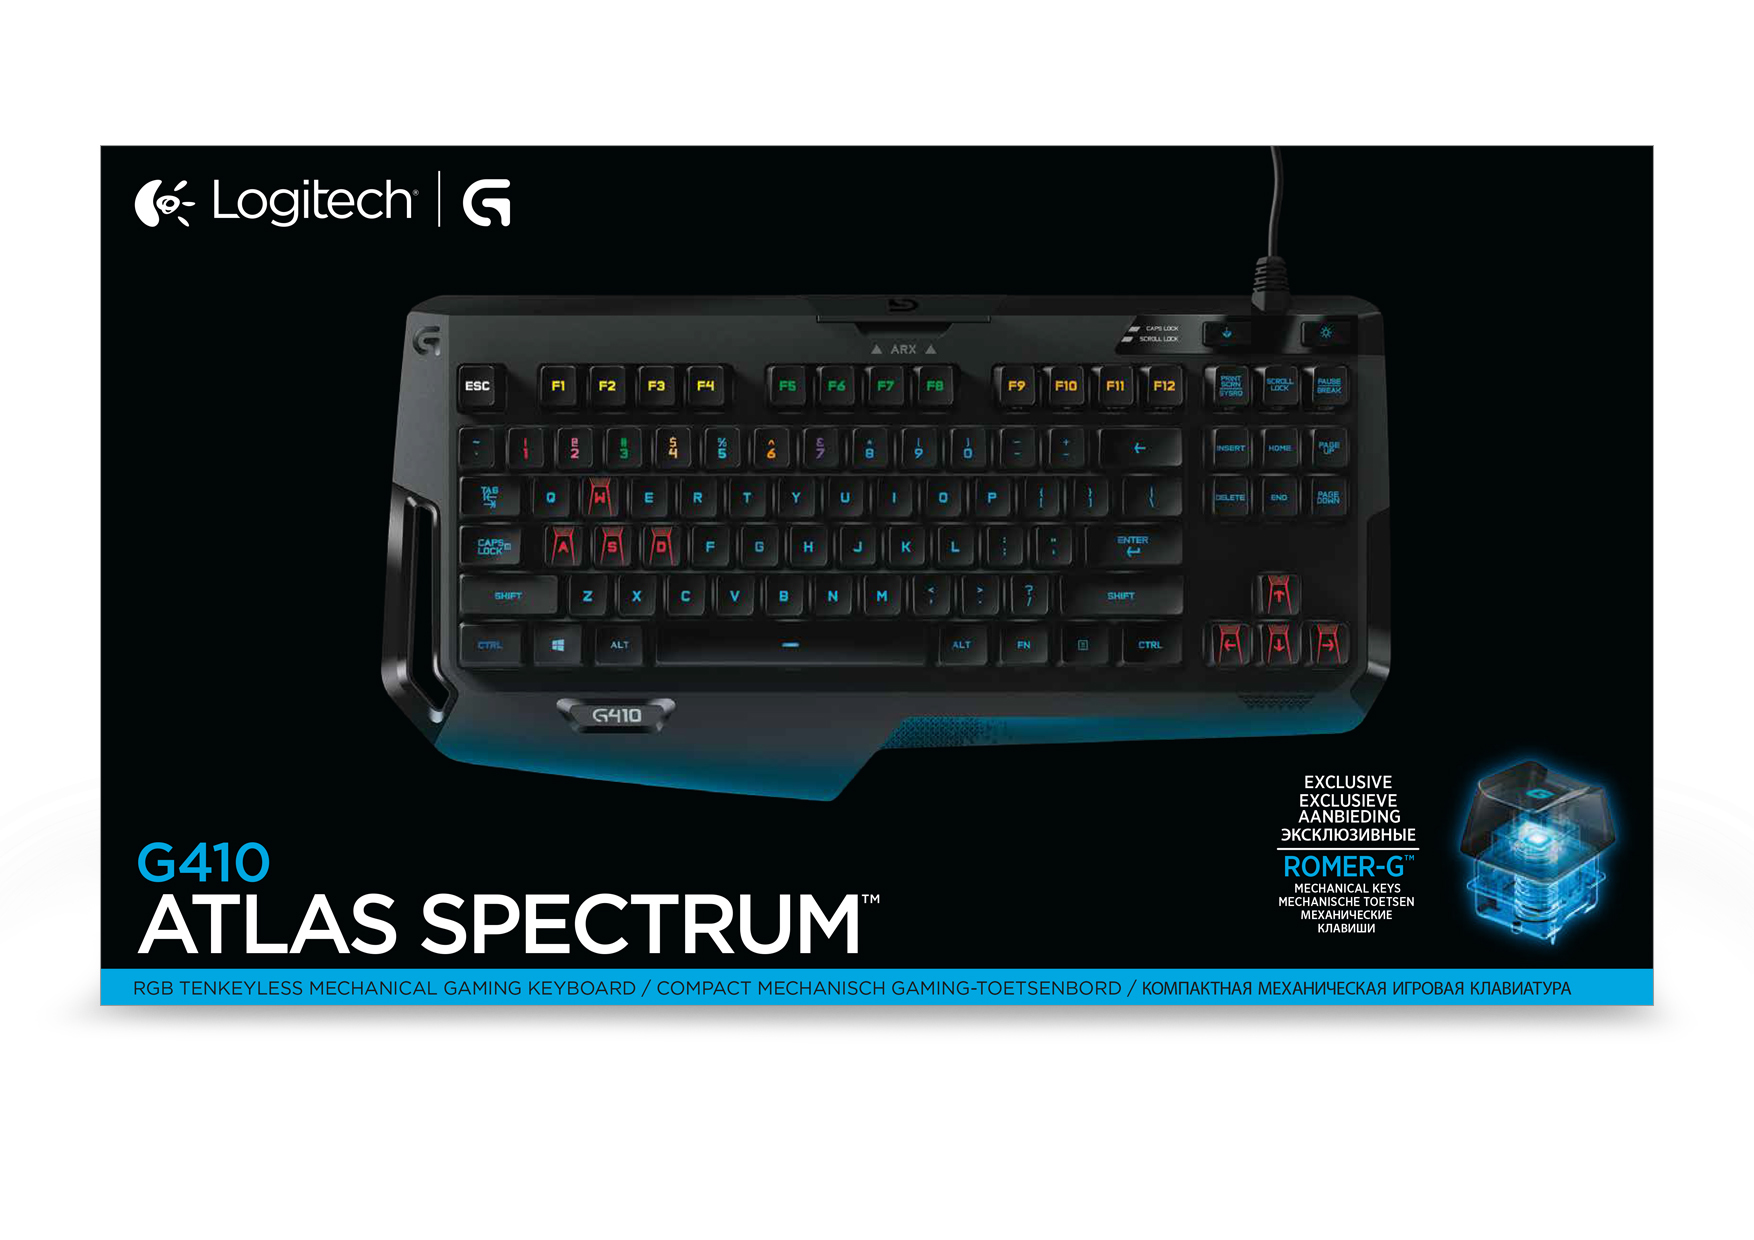 Logitech g g410 atlas spectrum - avec fil - usb - clavier mécanique - qwertz - led rgb - noir